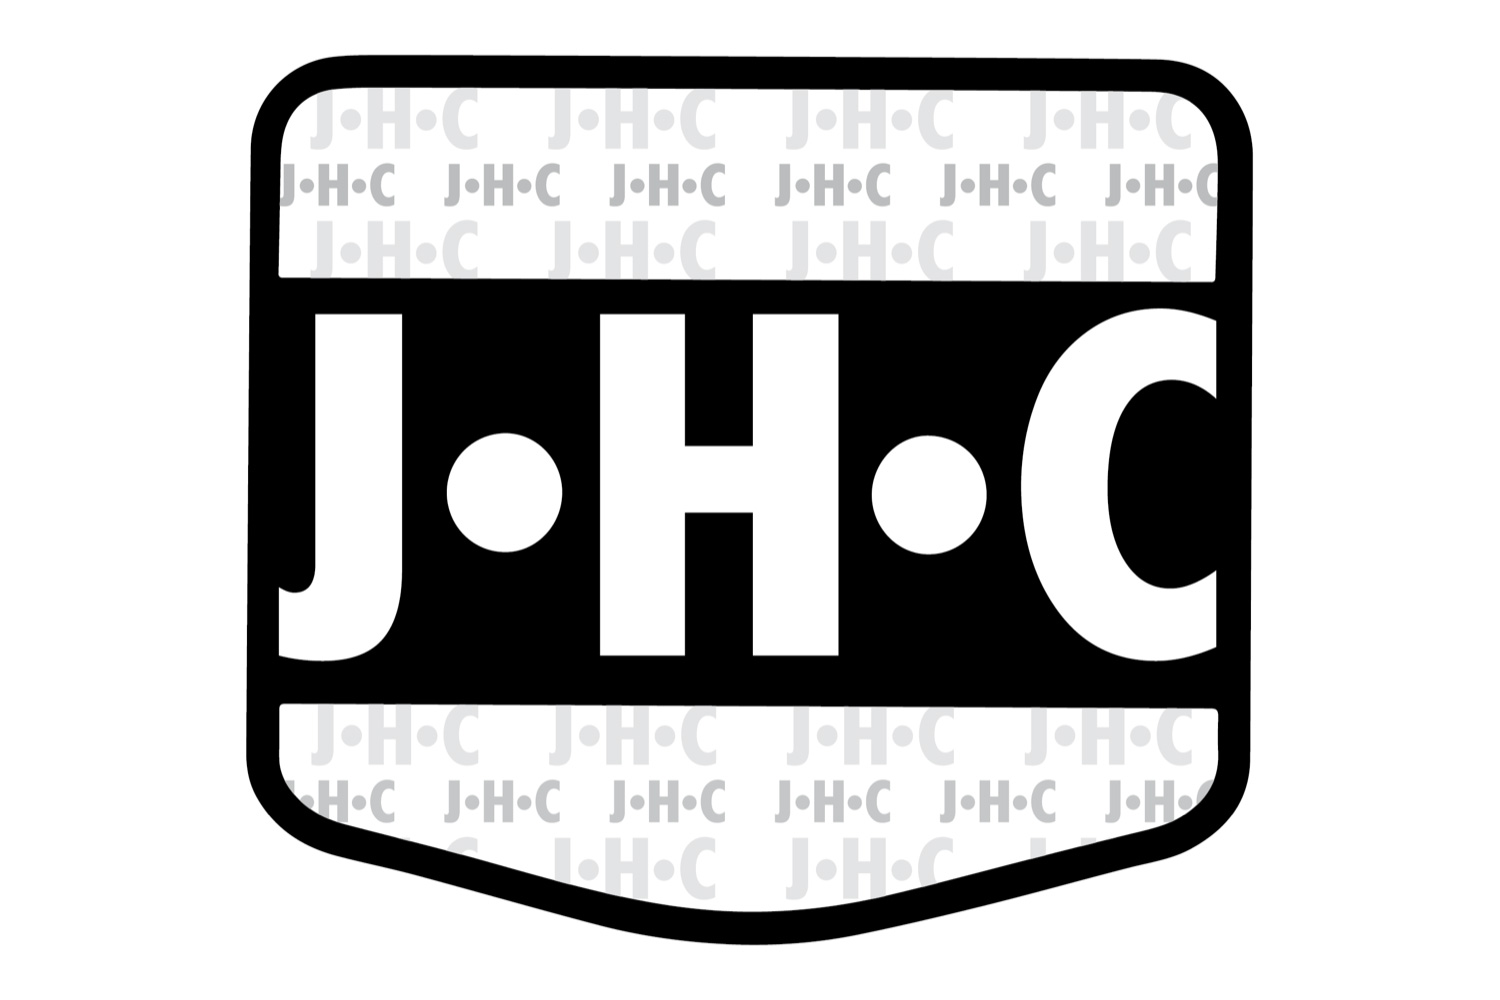 Valier Motorsport übernimmt JHC Carburetor